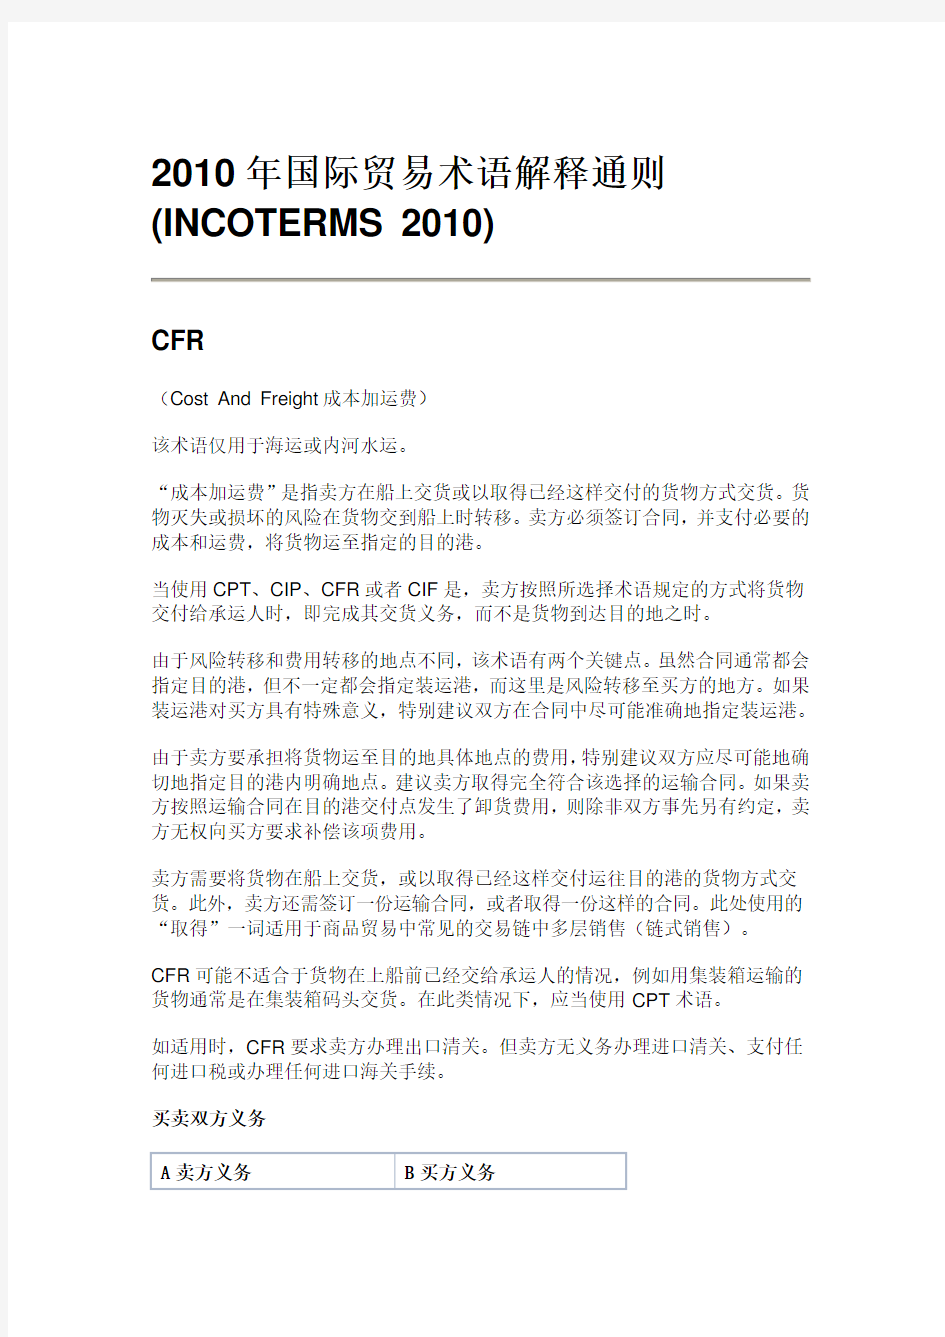 2010年国际贸易术语解释通则-CFR